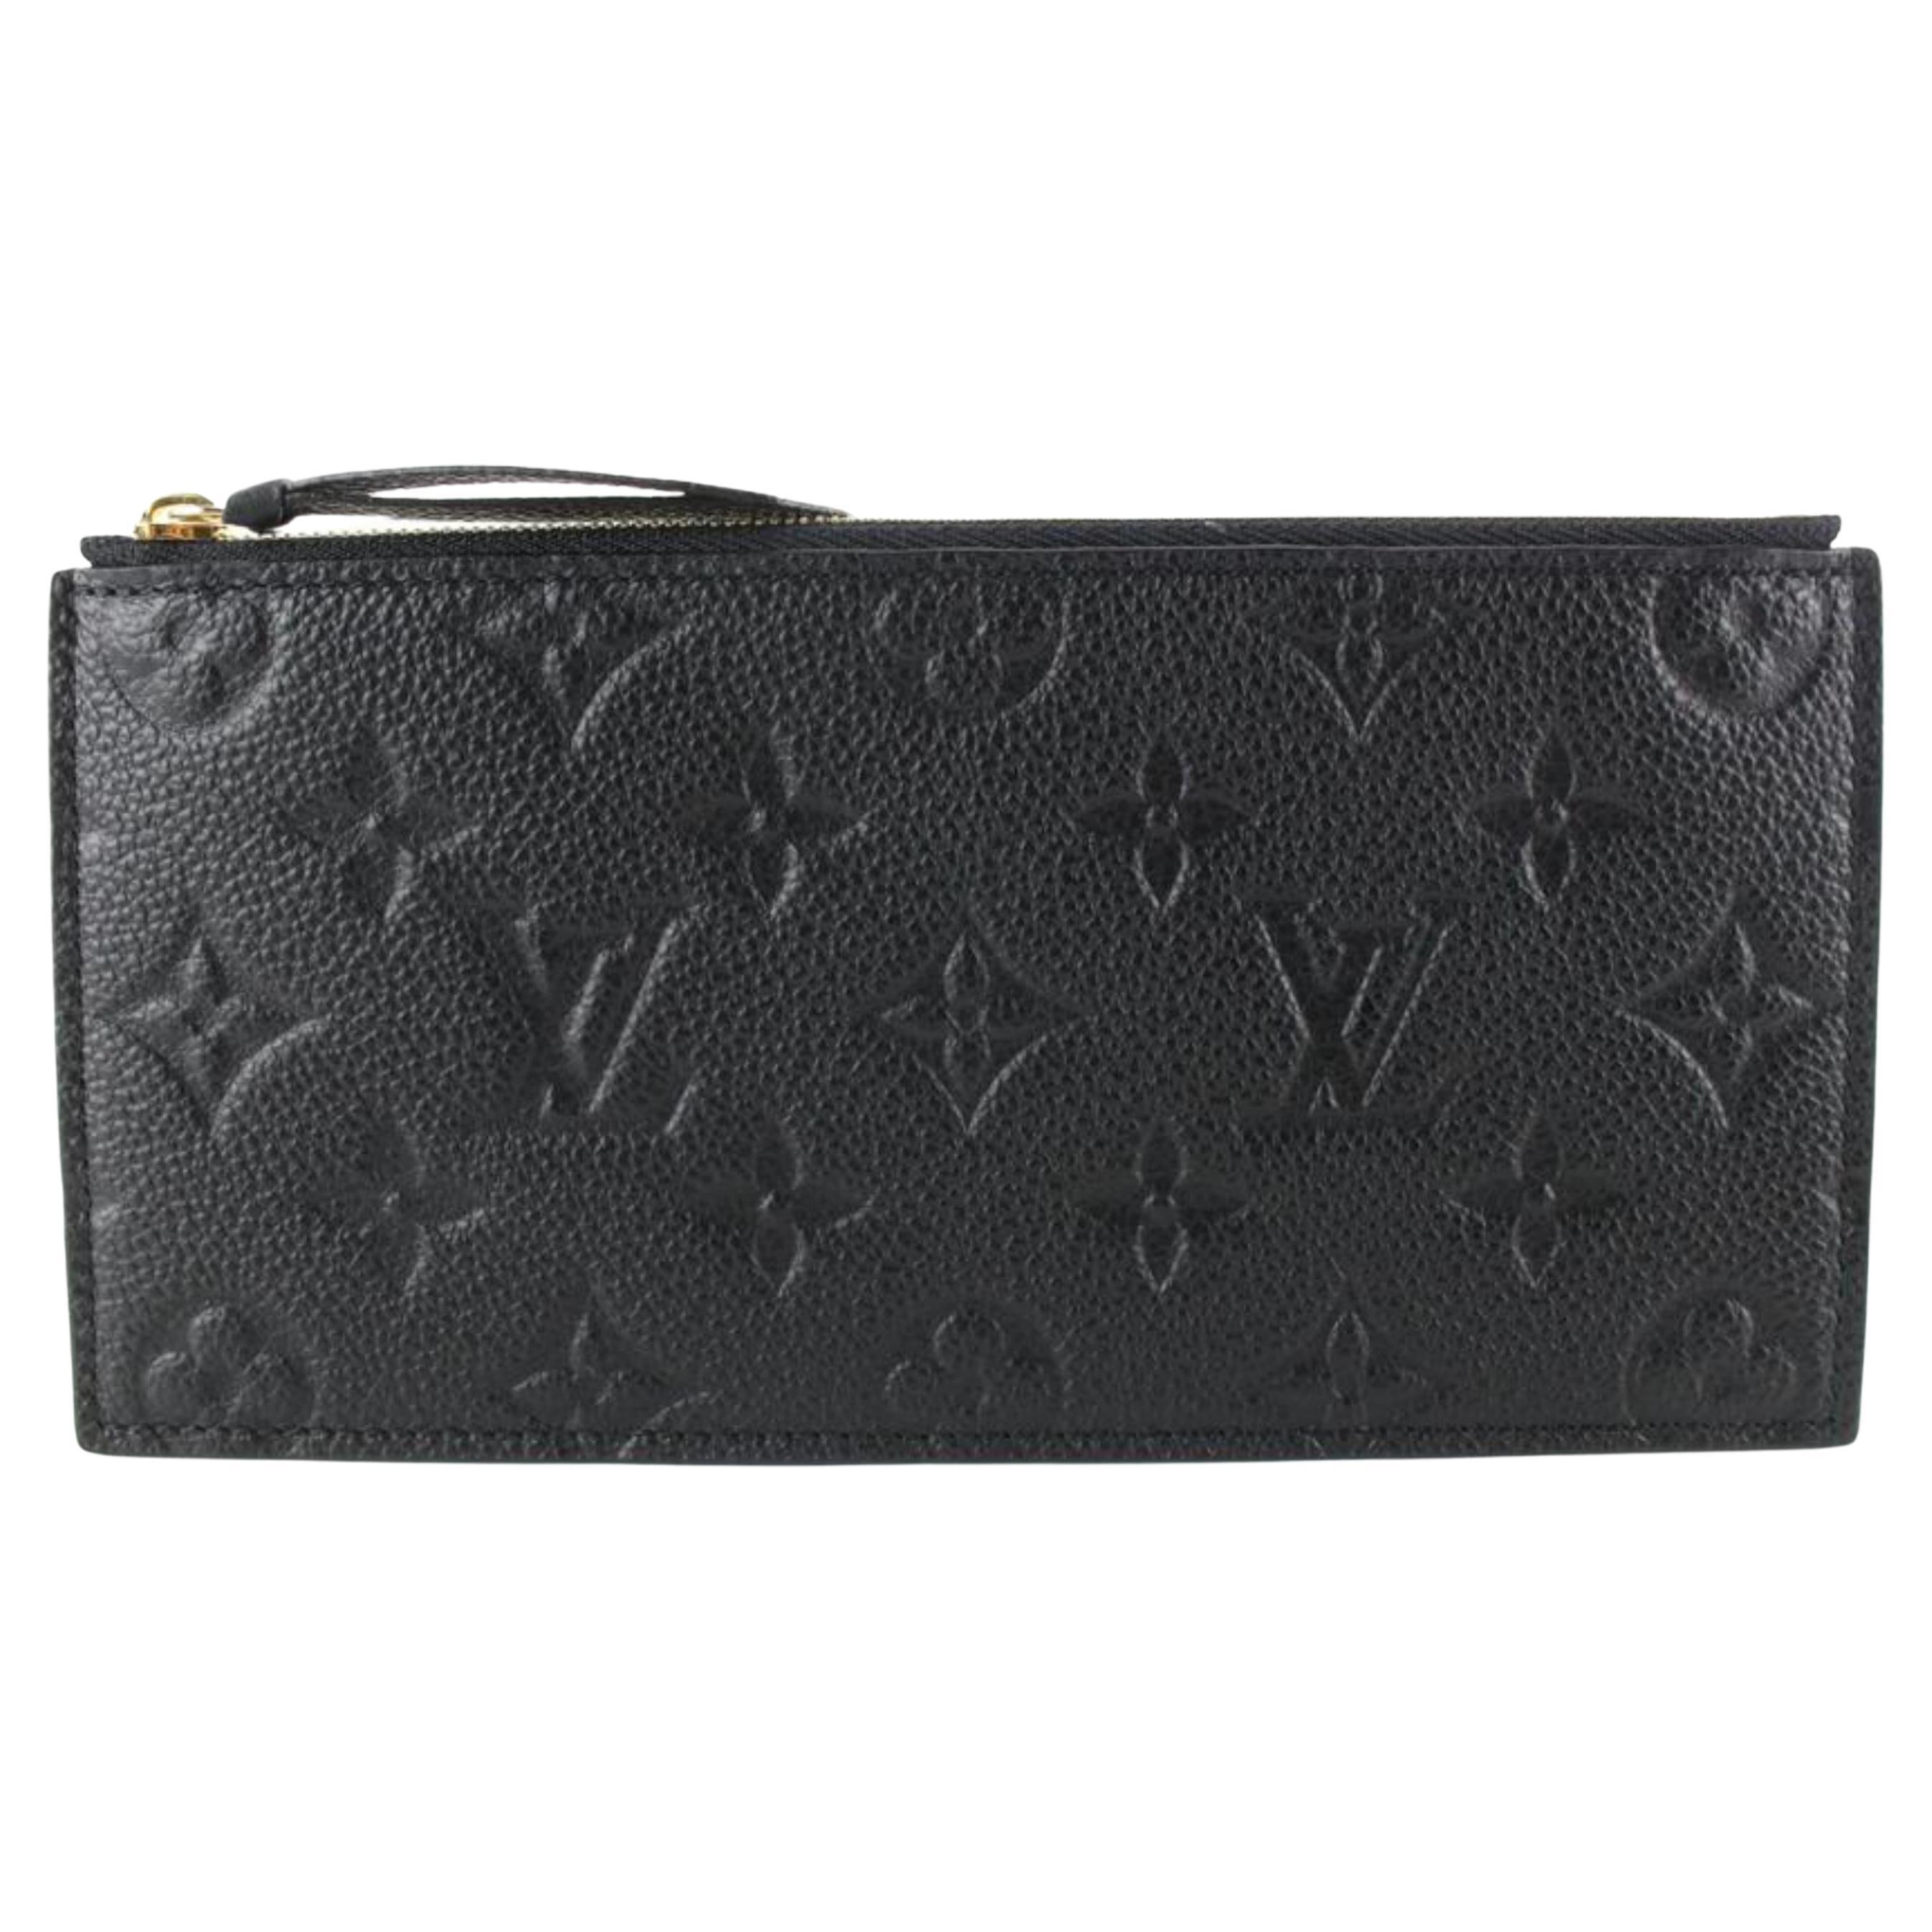 Louis Vuitton Black Leather Monogram Empreinte Felicie Zip Pouch Insert 6lk712s